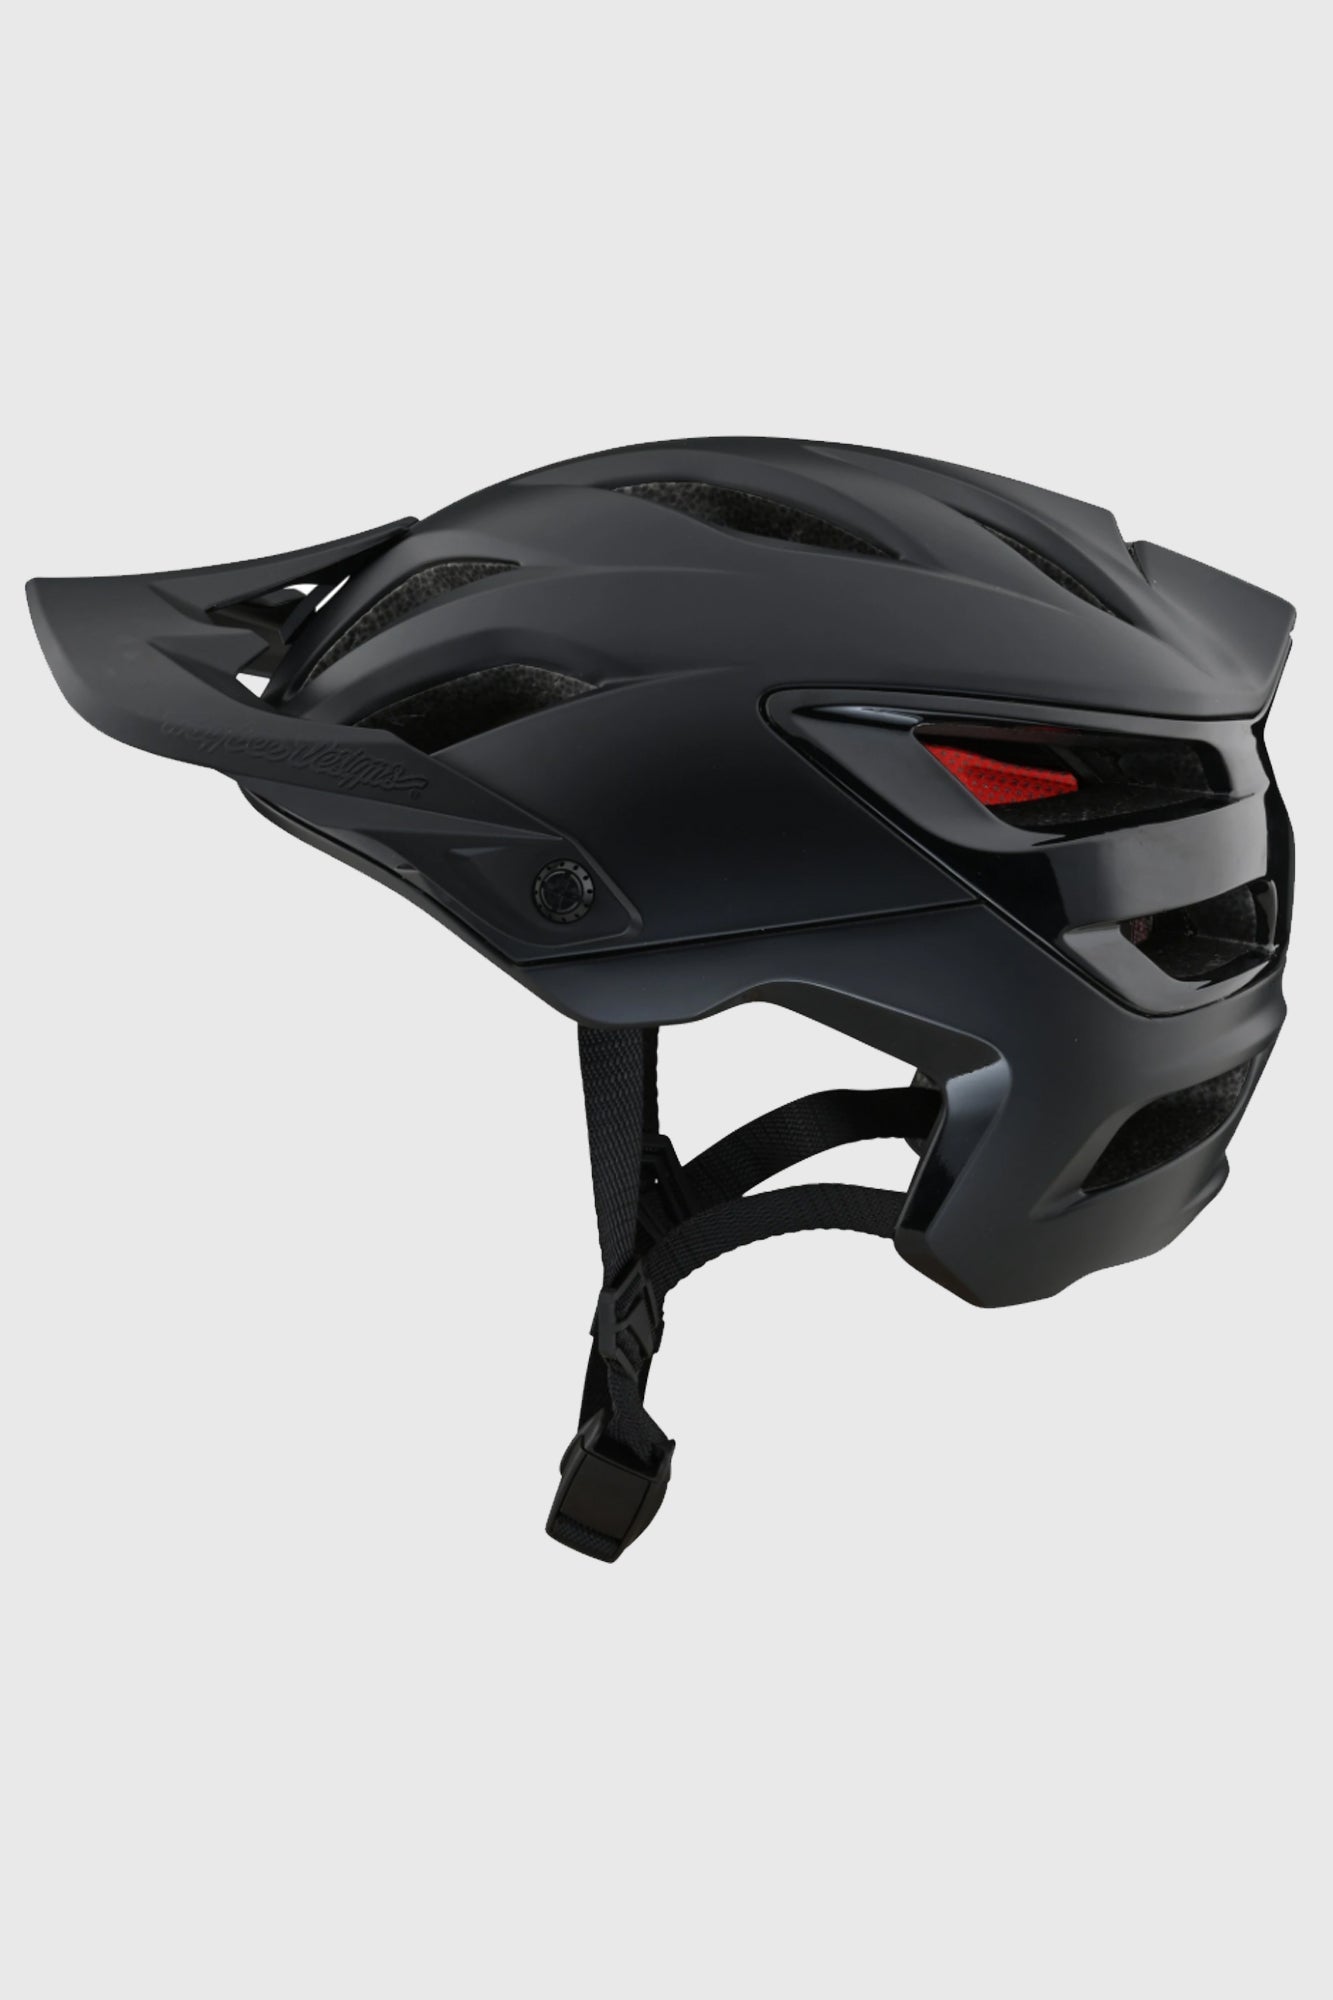 Troy Lee A3 MIPS Helmet - Uno Black